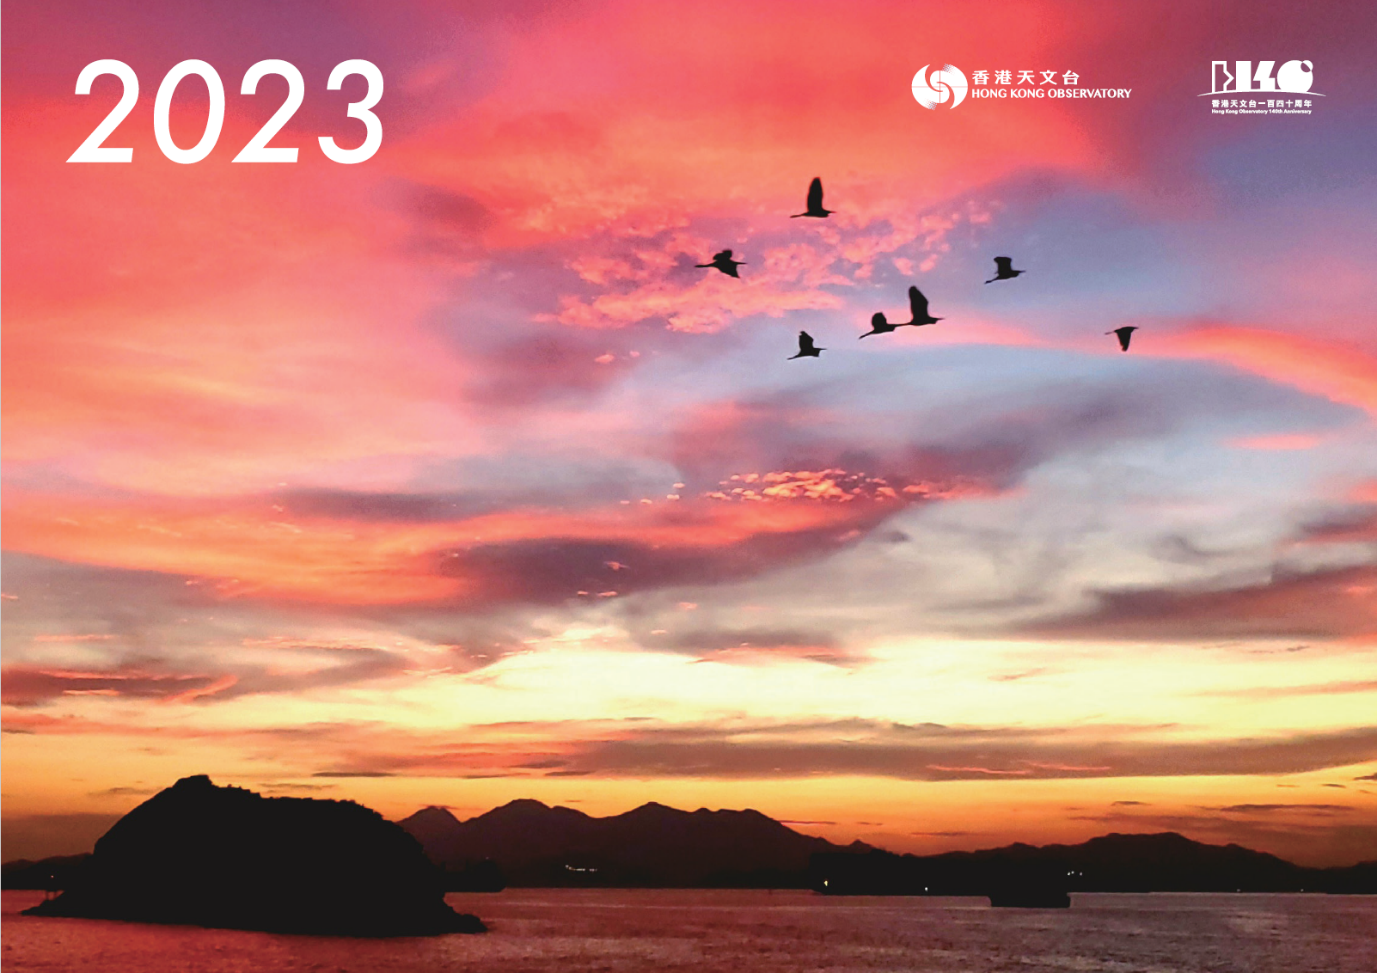 《香港天文台月曆 2023》封面